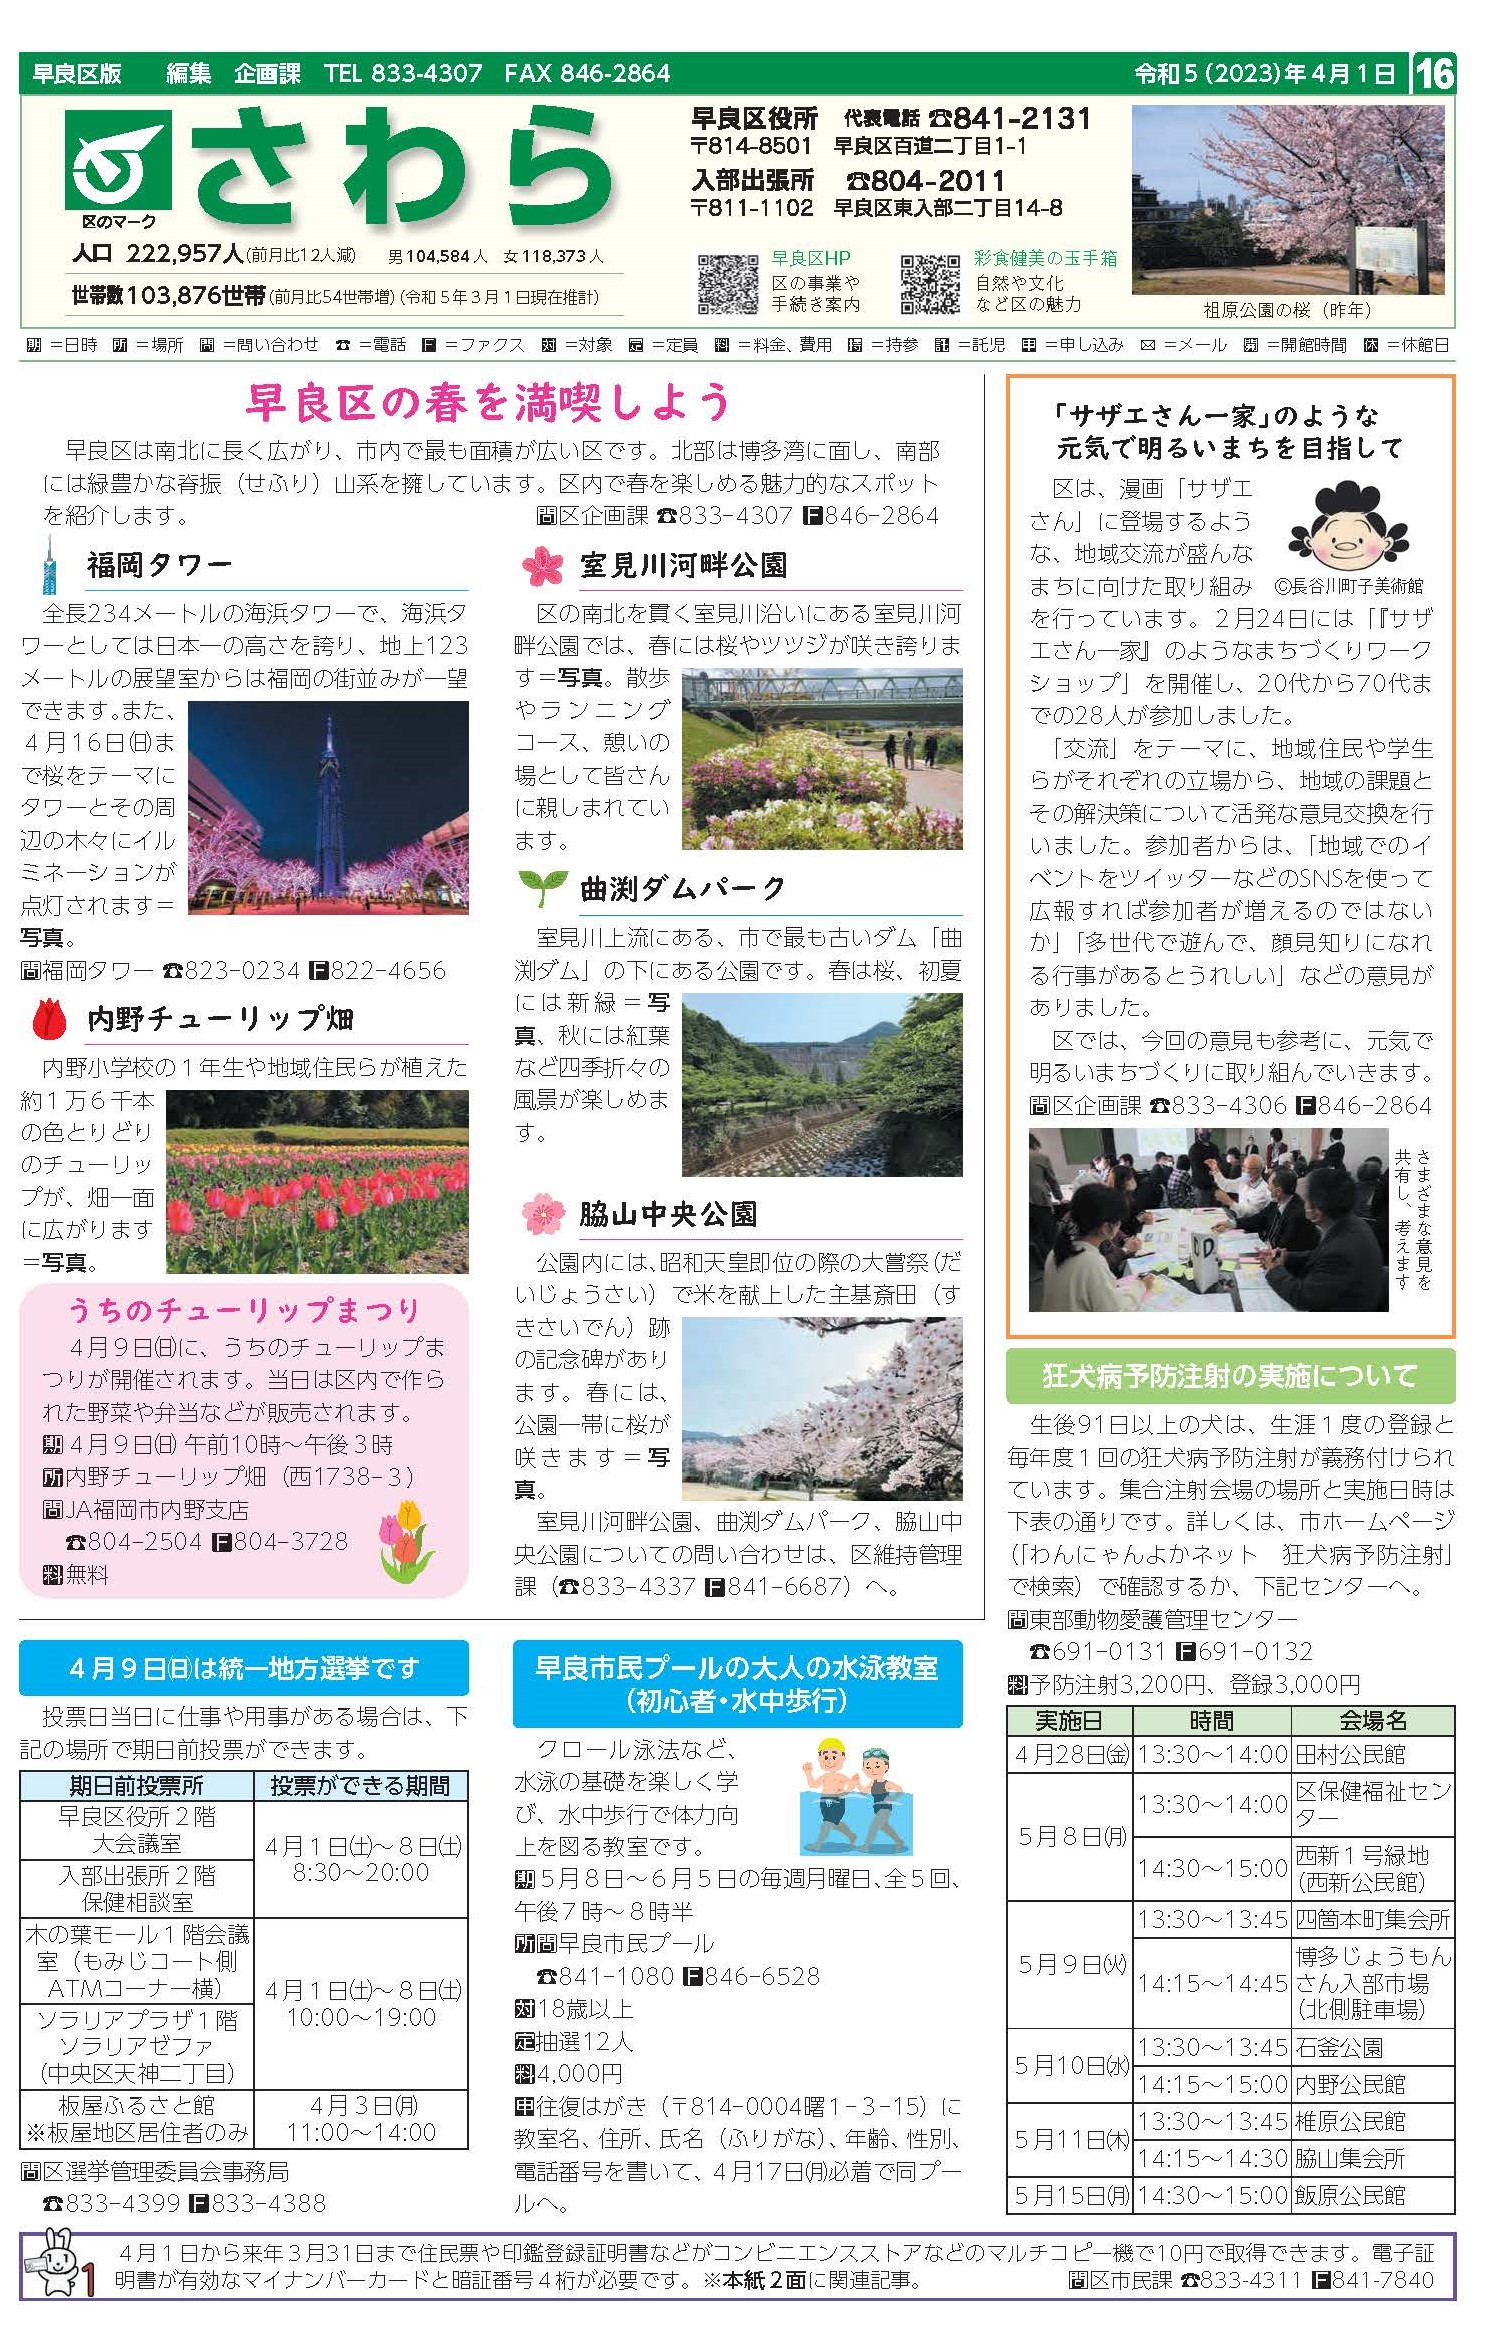 福岡市政だより2023年4月1日号の早良区版の紙面画像